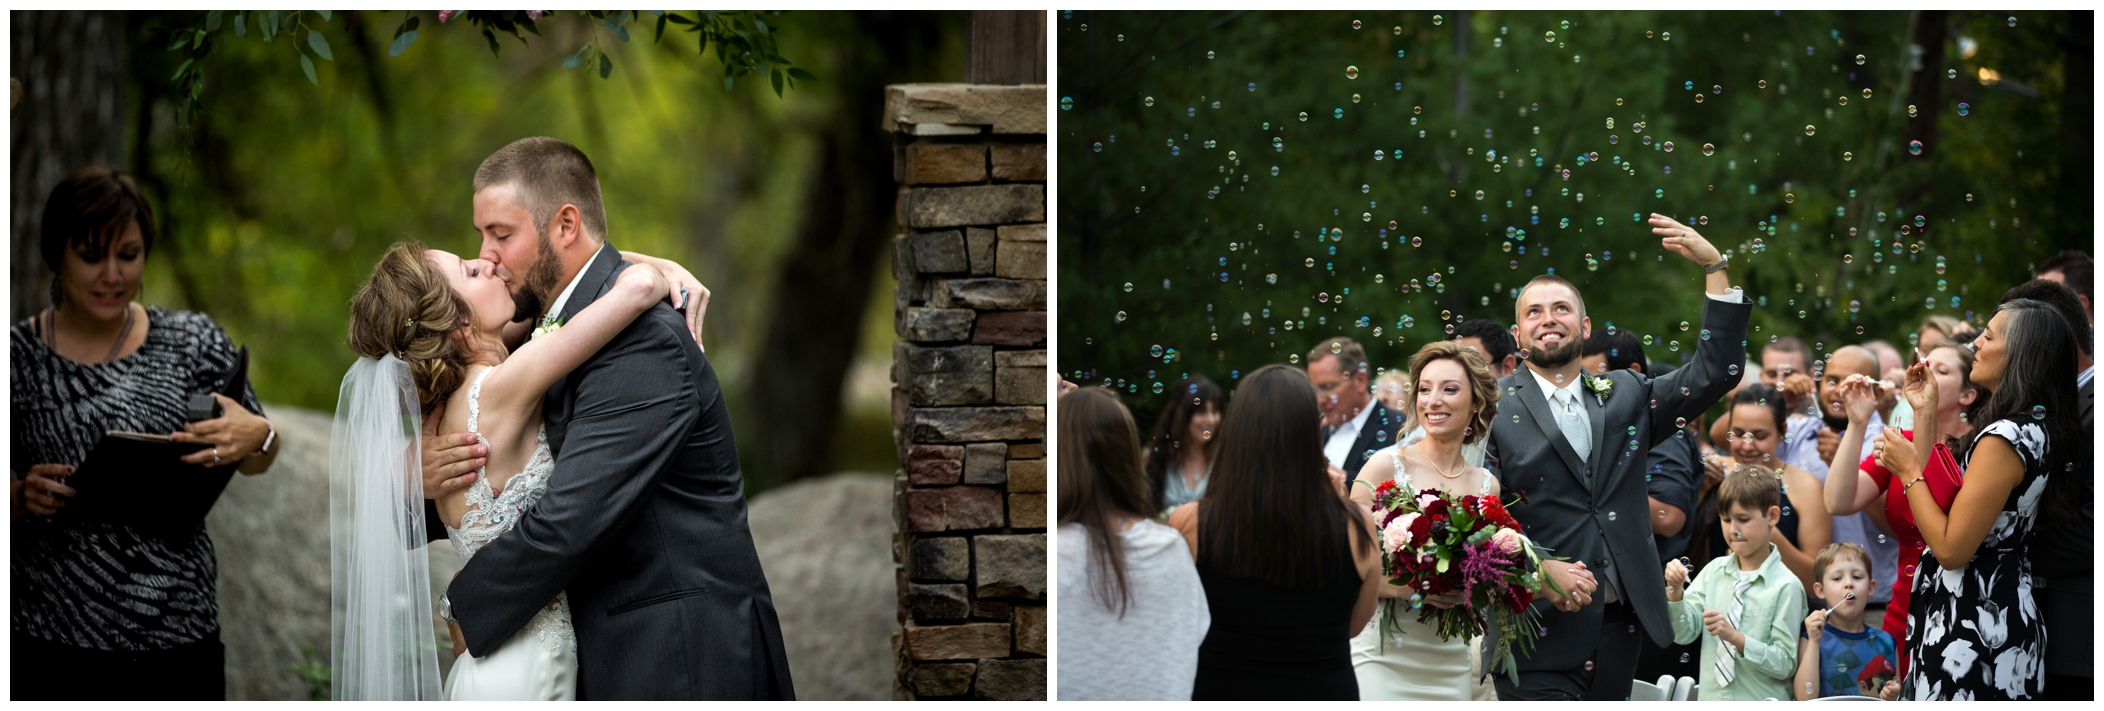 Boulder Colorado outdoor wedding ceremony photos 